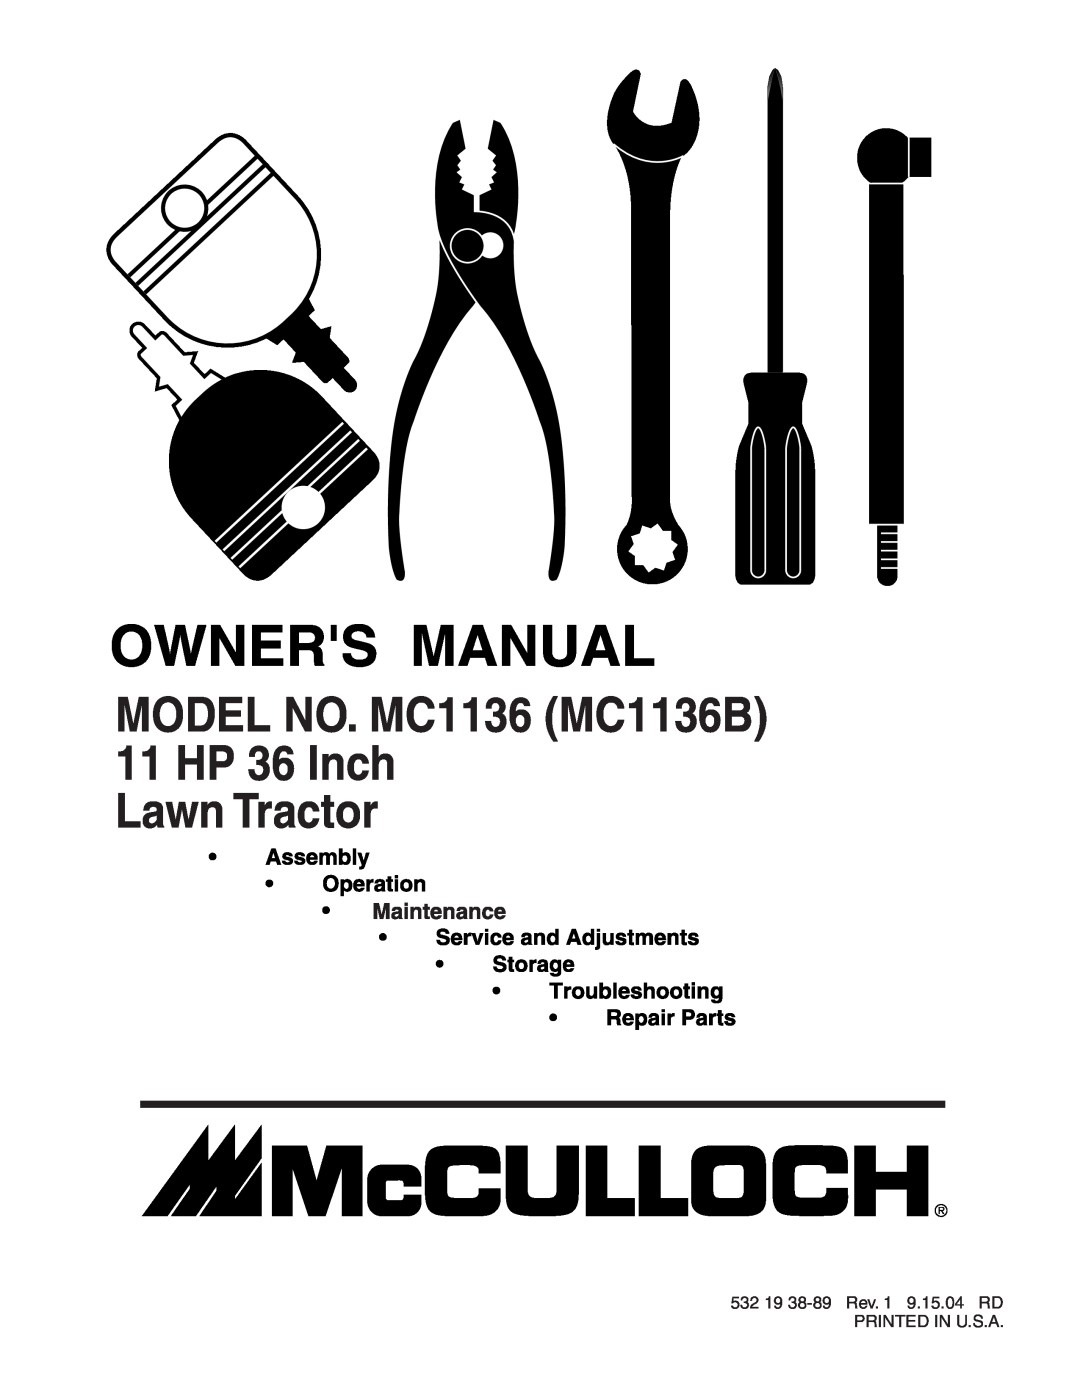 McCulloch manual MODEL NO. MC1136 MC1136B 11 HP 36 Inch Lawn Tractor 